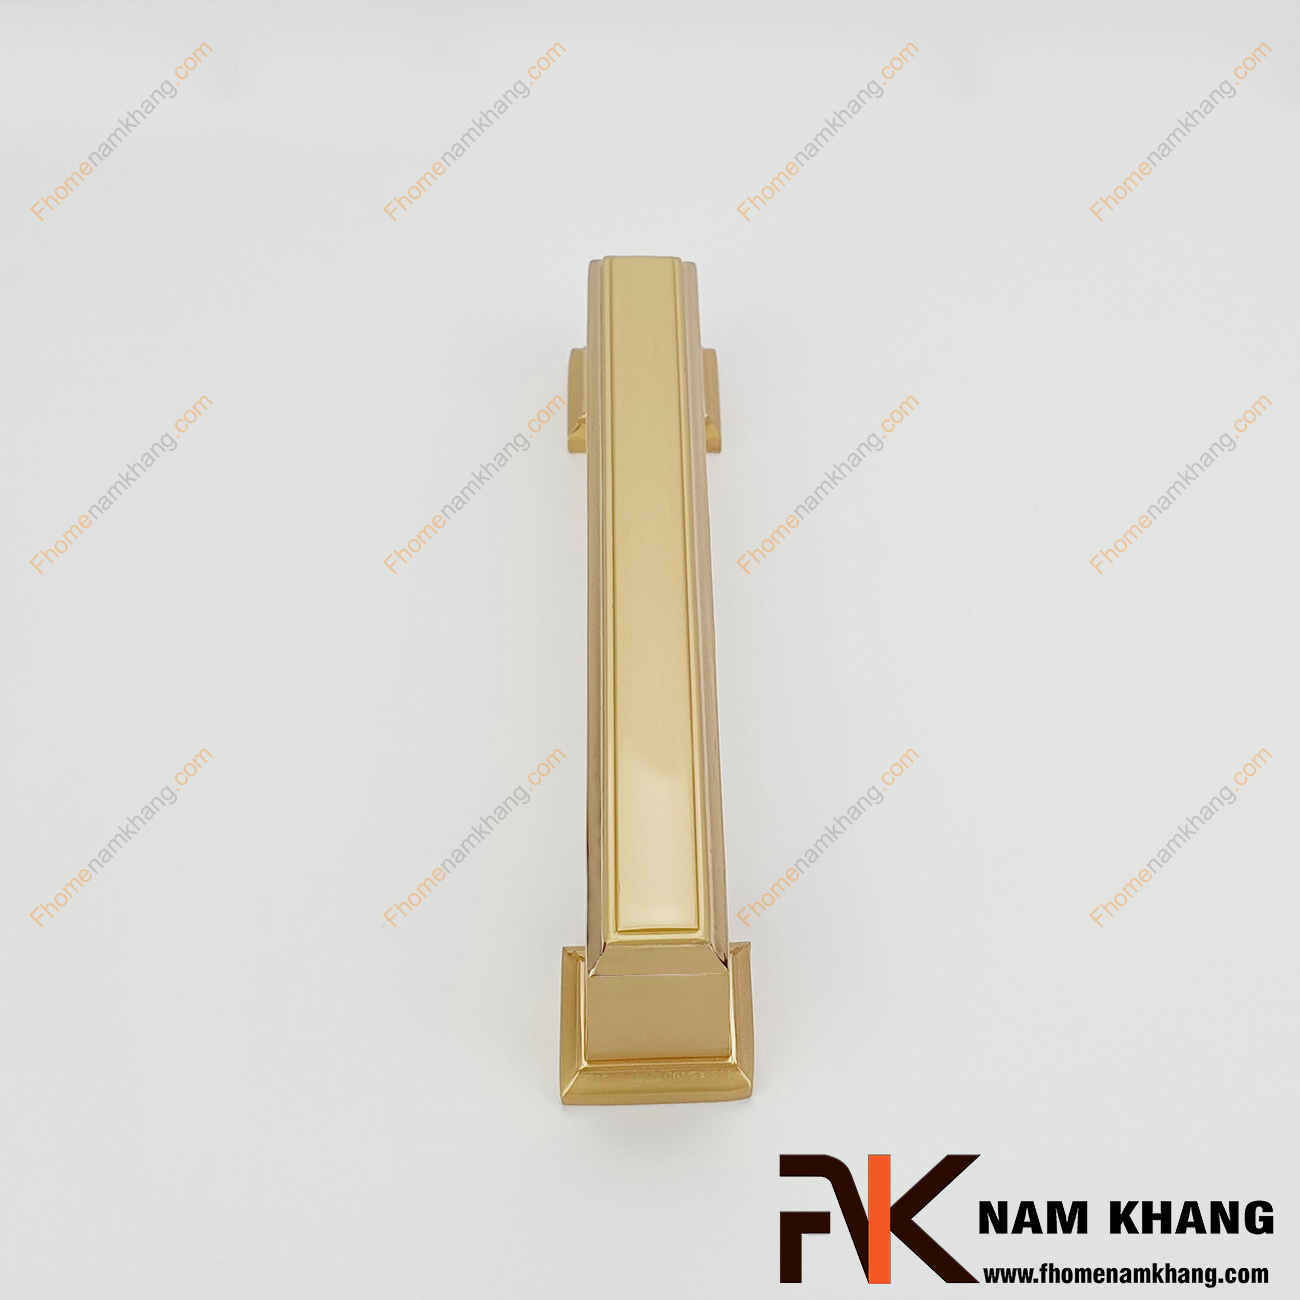 Tay nắm tủ dạng vuông màu vàng viền ánh kim NK230-VK - Thiết kế tay nắm tủ đơn giản với toàn bộ phần thân và đế tay nắm vuông và có các đường kẻ tạo điểm nhấn cho một sản phẩm chất lượng.